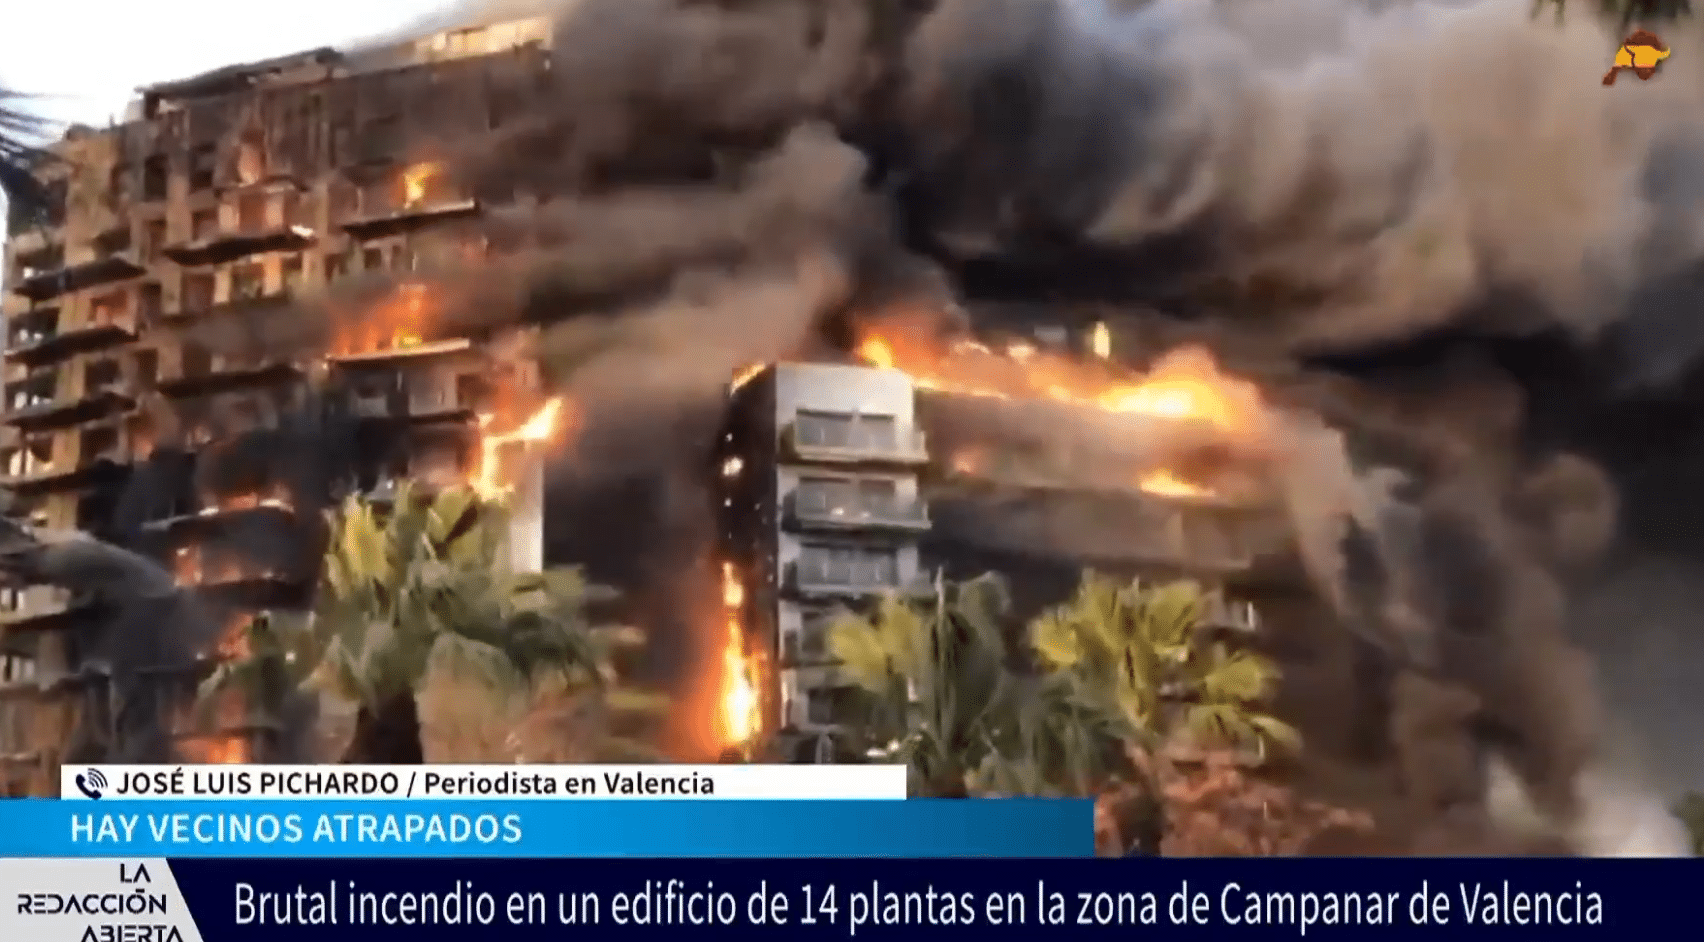 El periodista José Luis Pichardo nos cuenta el brutal incendio en un edificio de 14 plantas en Valencia